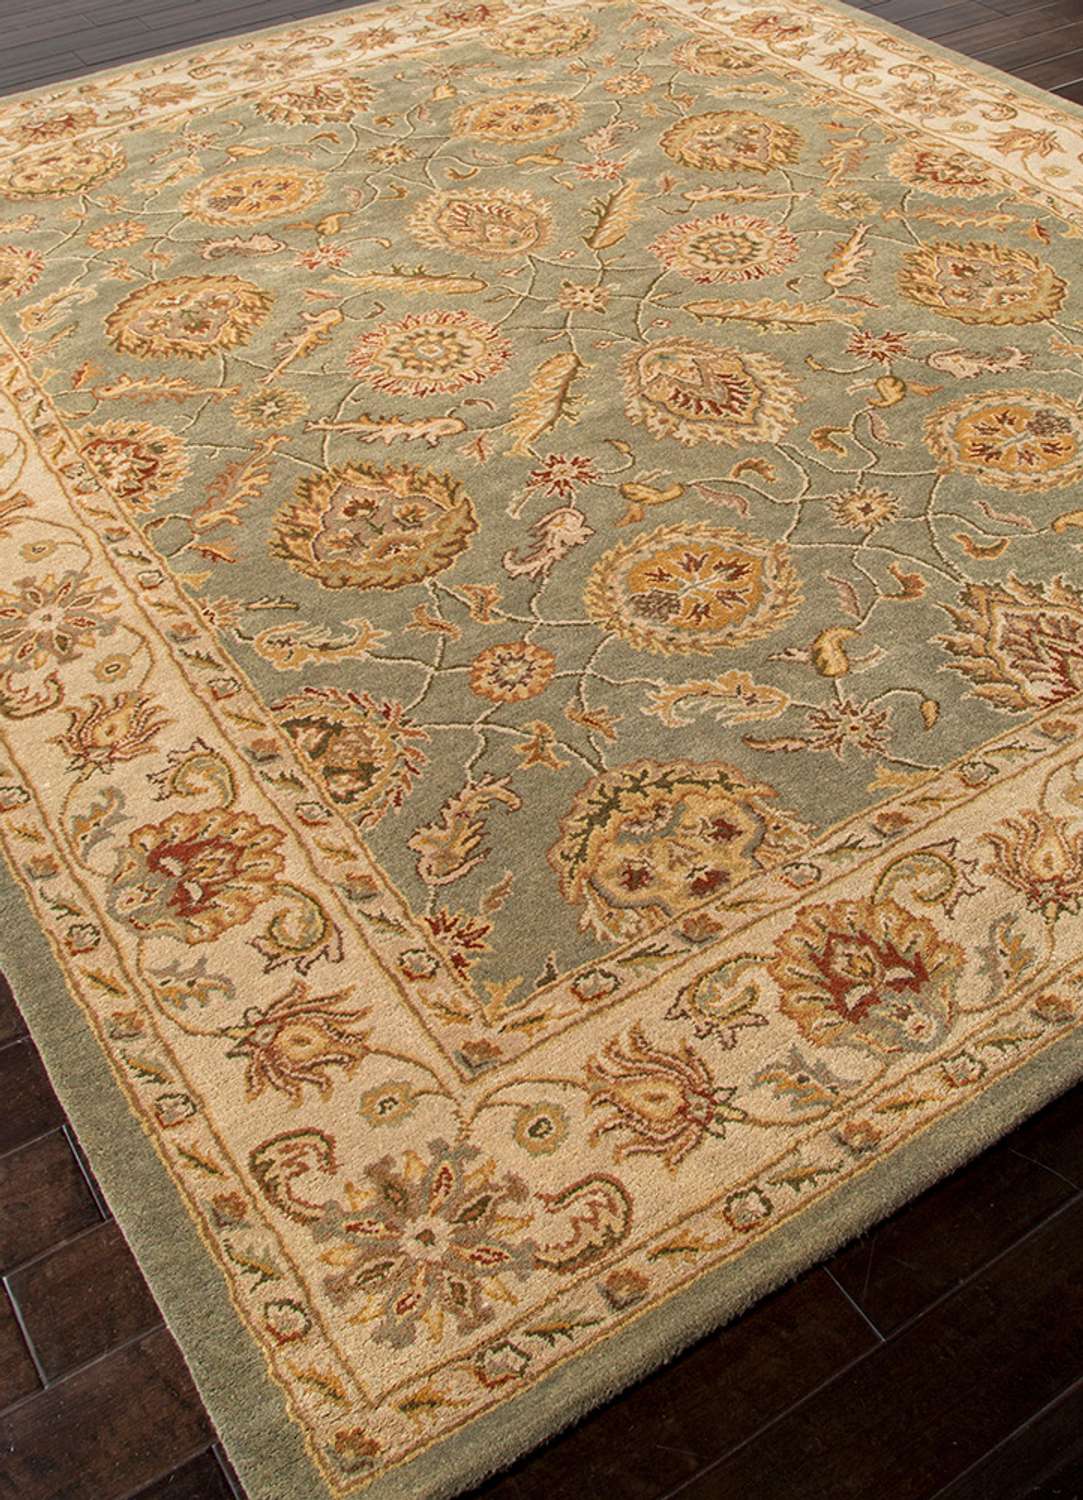 Wollen tapijt - Brenda - rechthoekig